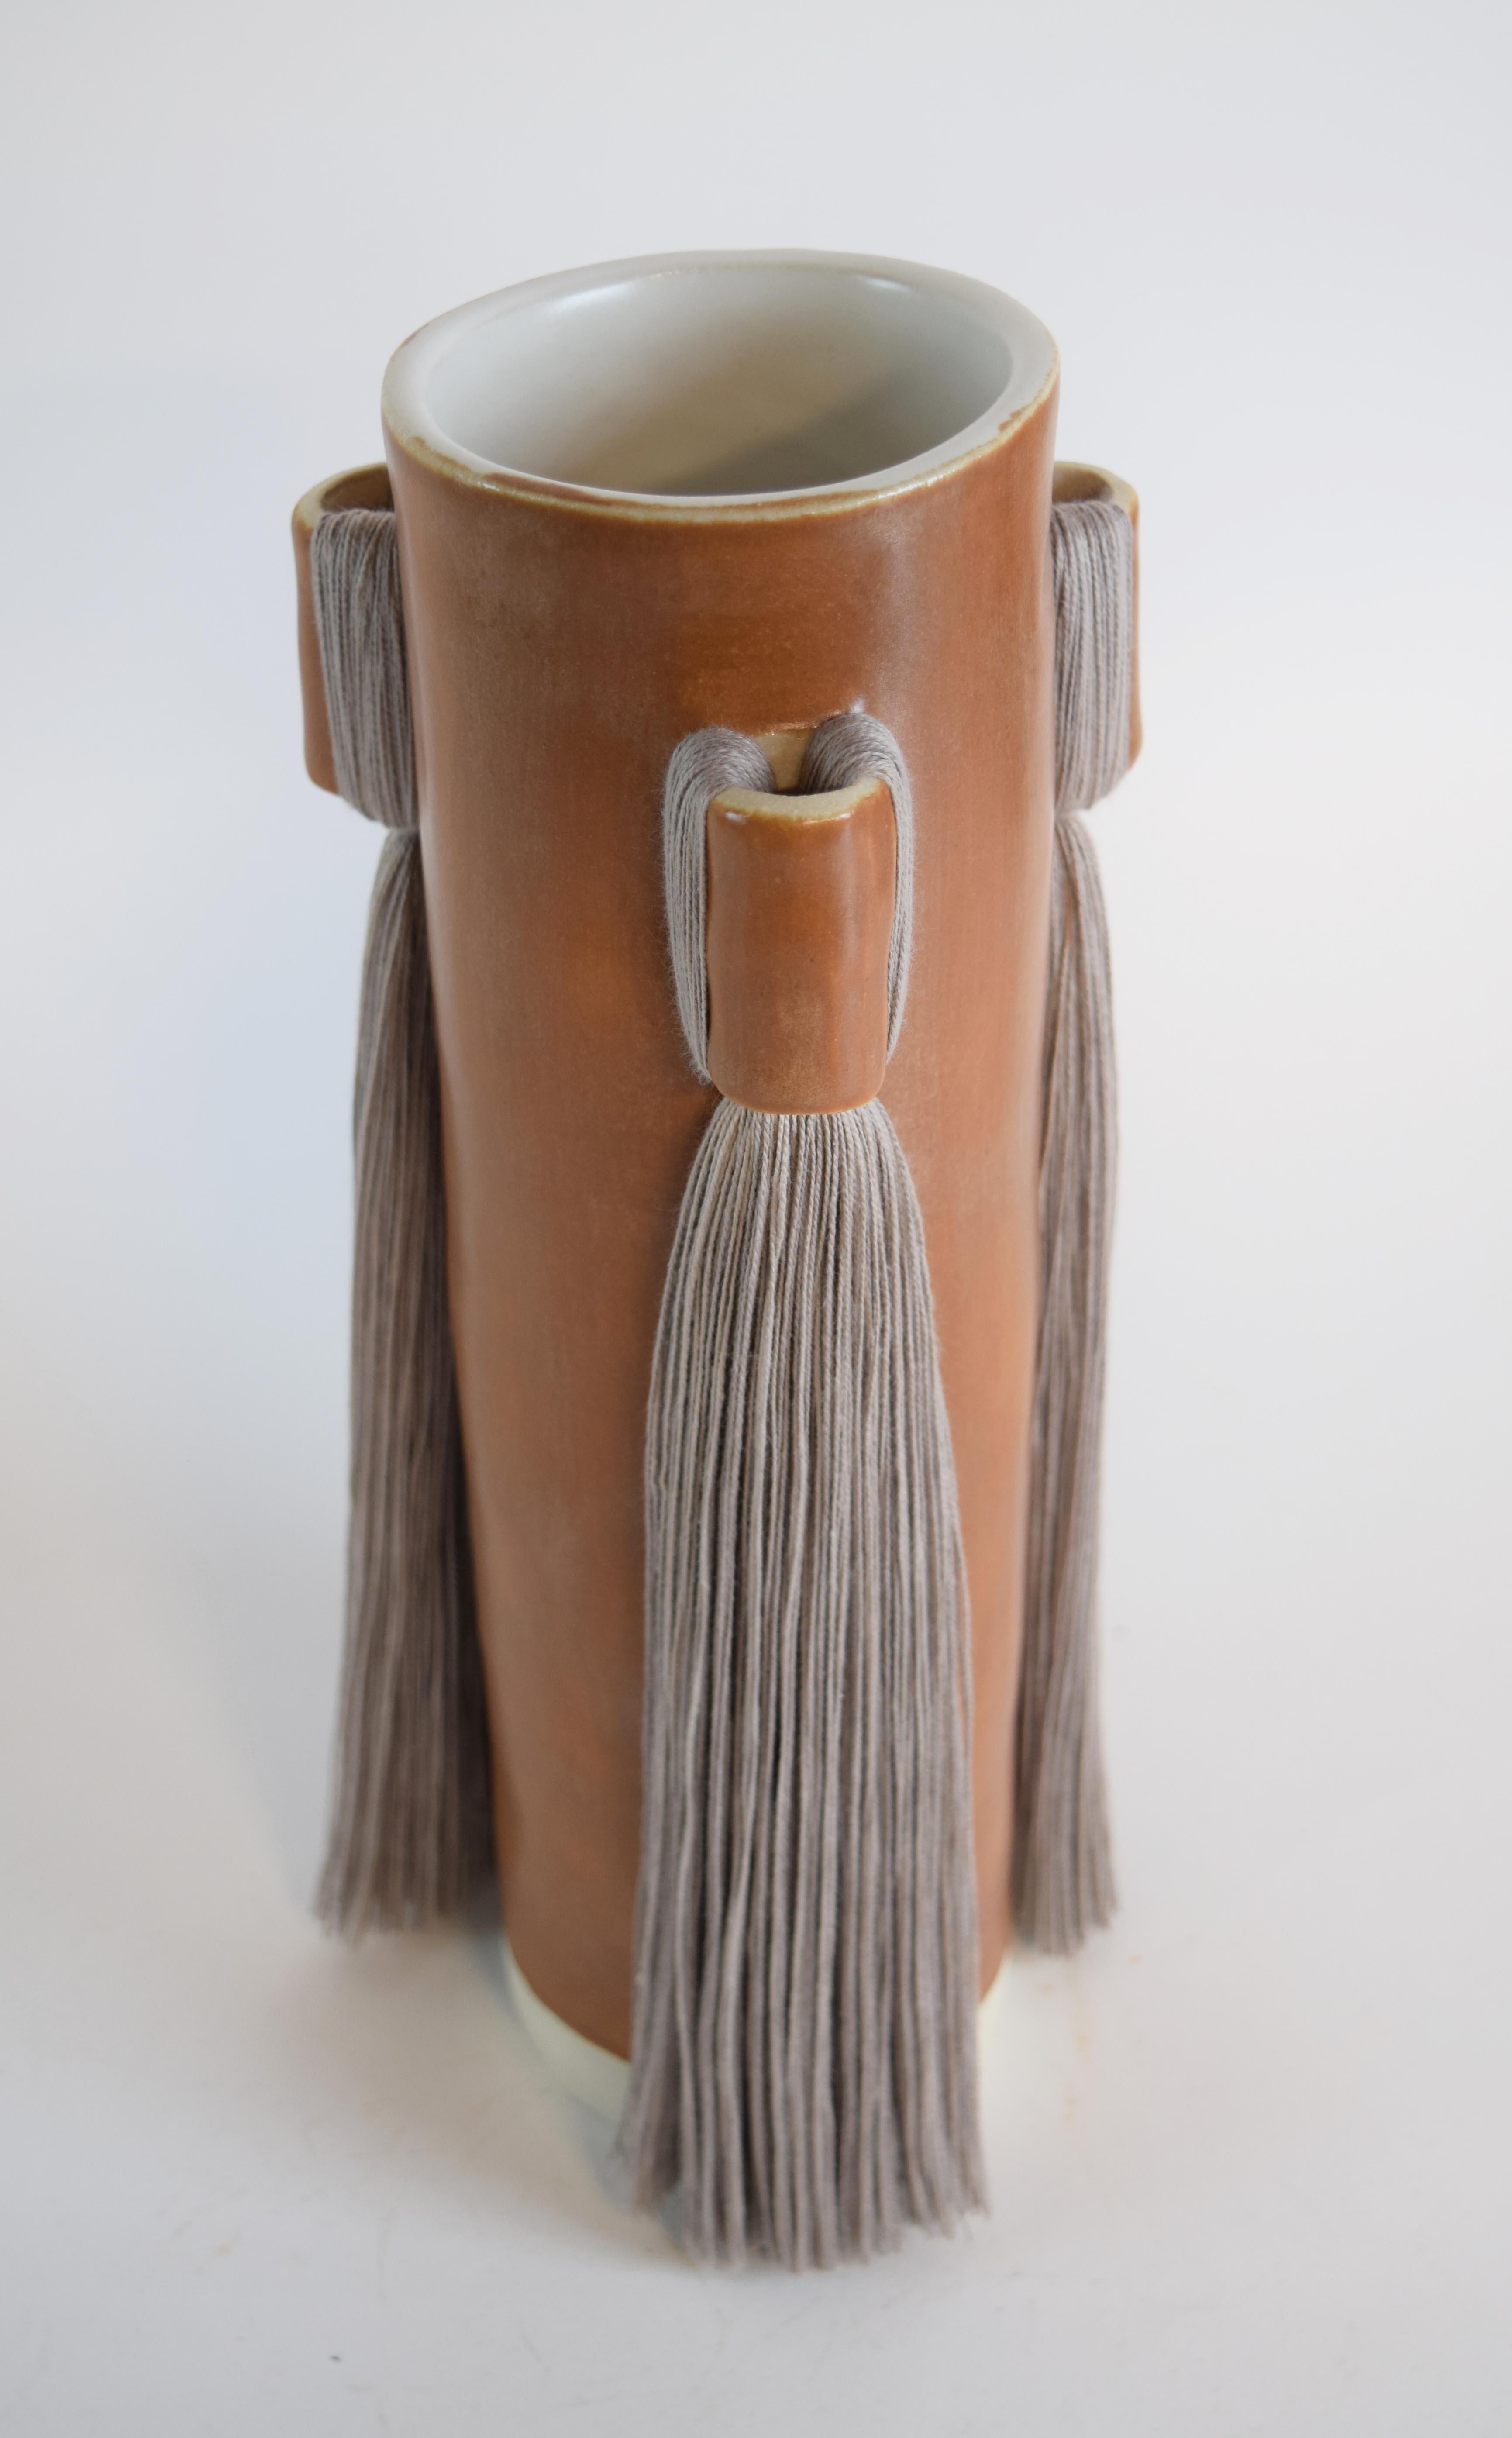 Vase #607 von Karen Gayle Tinney

Fransen schmücken 3 Seiten dieser Vase, die großzügig bemessen ist, um ein großes Blumenarrangement aufzunehmen.

Handgeformtes Steingut mit satinbrauner Glasur. Fransen aus hellgrauer Baumwolle. Die Innenseite ist